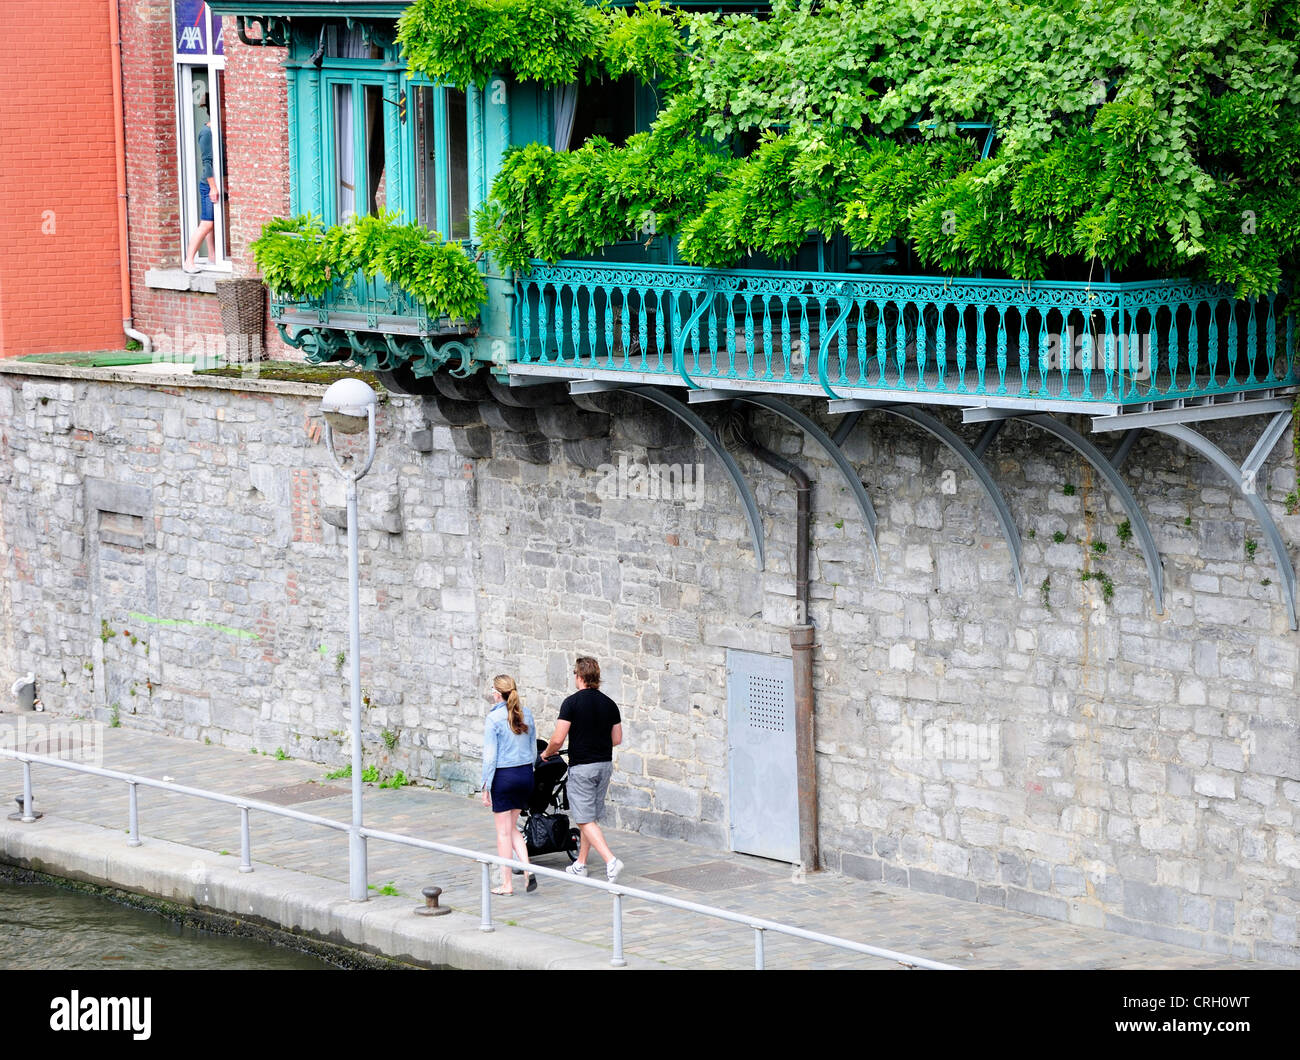 Namur, Belgique. Planté balcon donnant sur la rivière Sambre. Jeune couple  avec poussette Photo Stock - Alamy